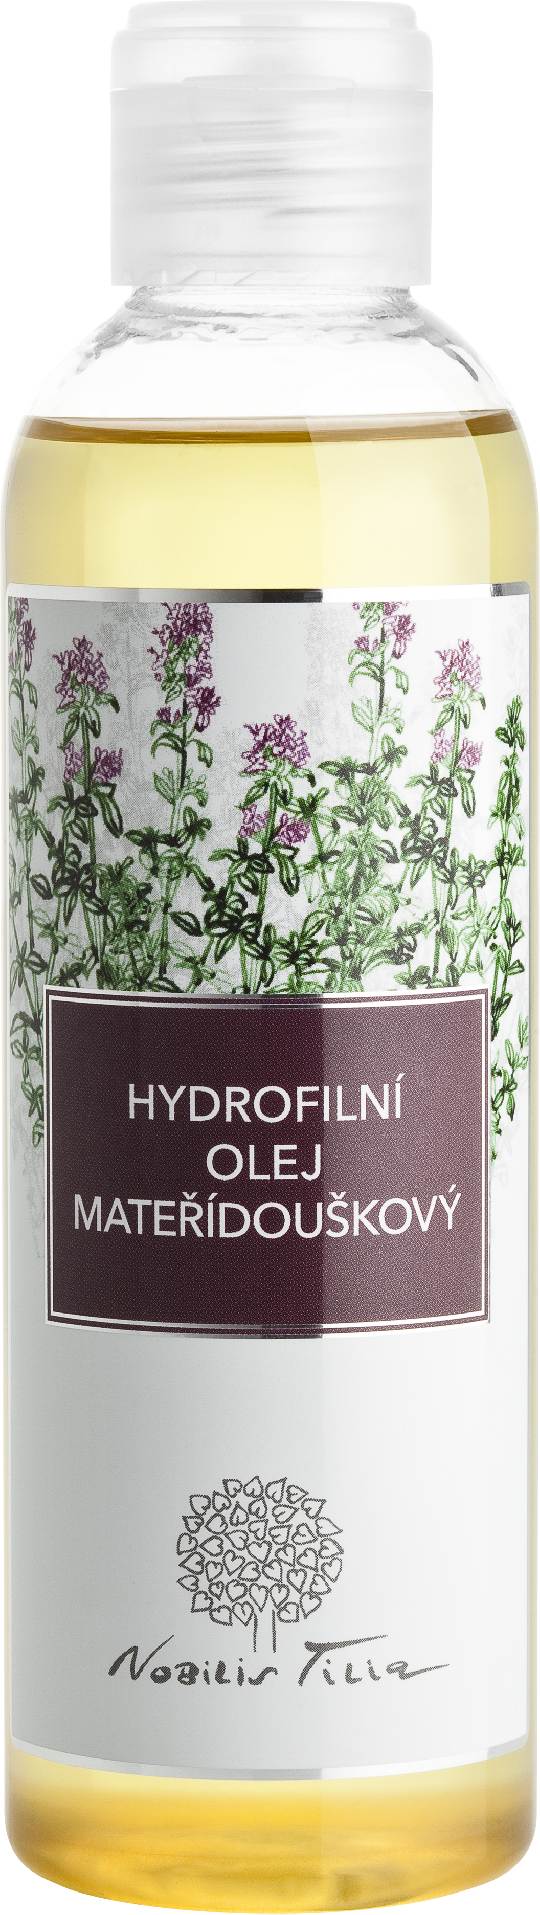 Hydrofilní olej Mateřídouškový: 200 ml